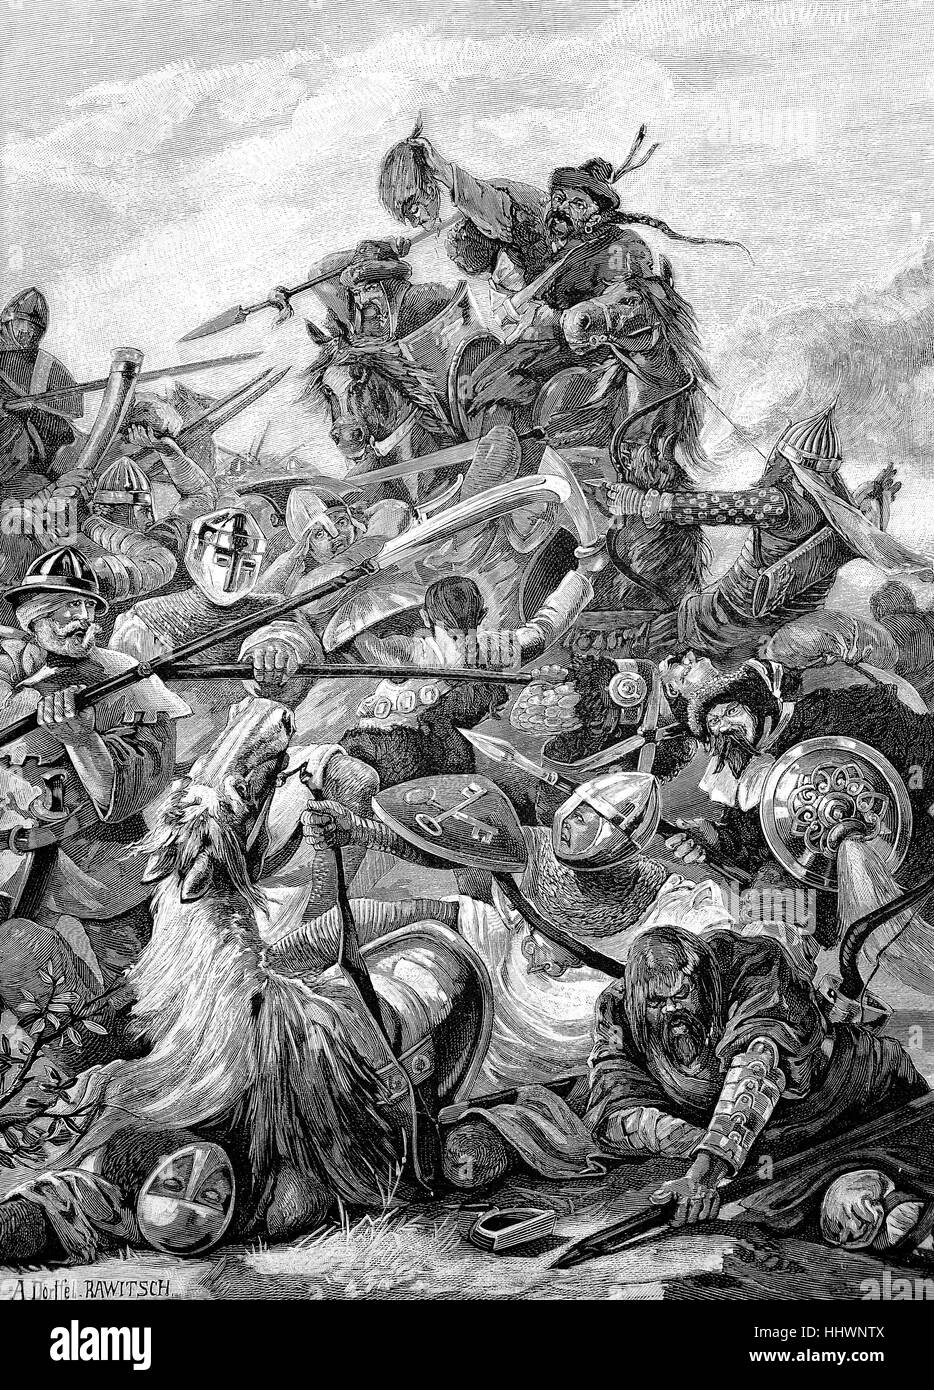 La bataille de Legnica, également connu sous le nom de la bataille de Liegnitz, Pologne, dessin original de A. Historique Doerffel, Image ou illustration, publié 1890, l'amélioration numérique Banque D'Images